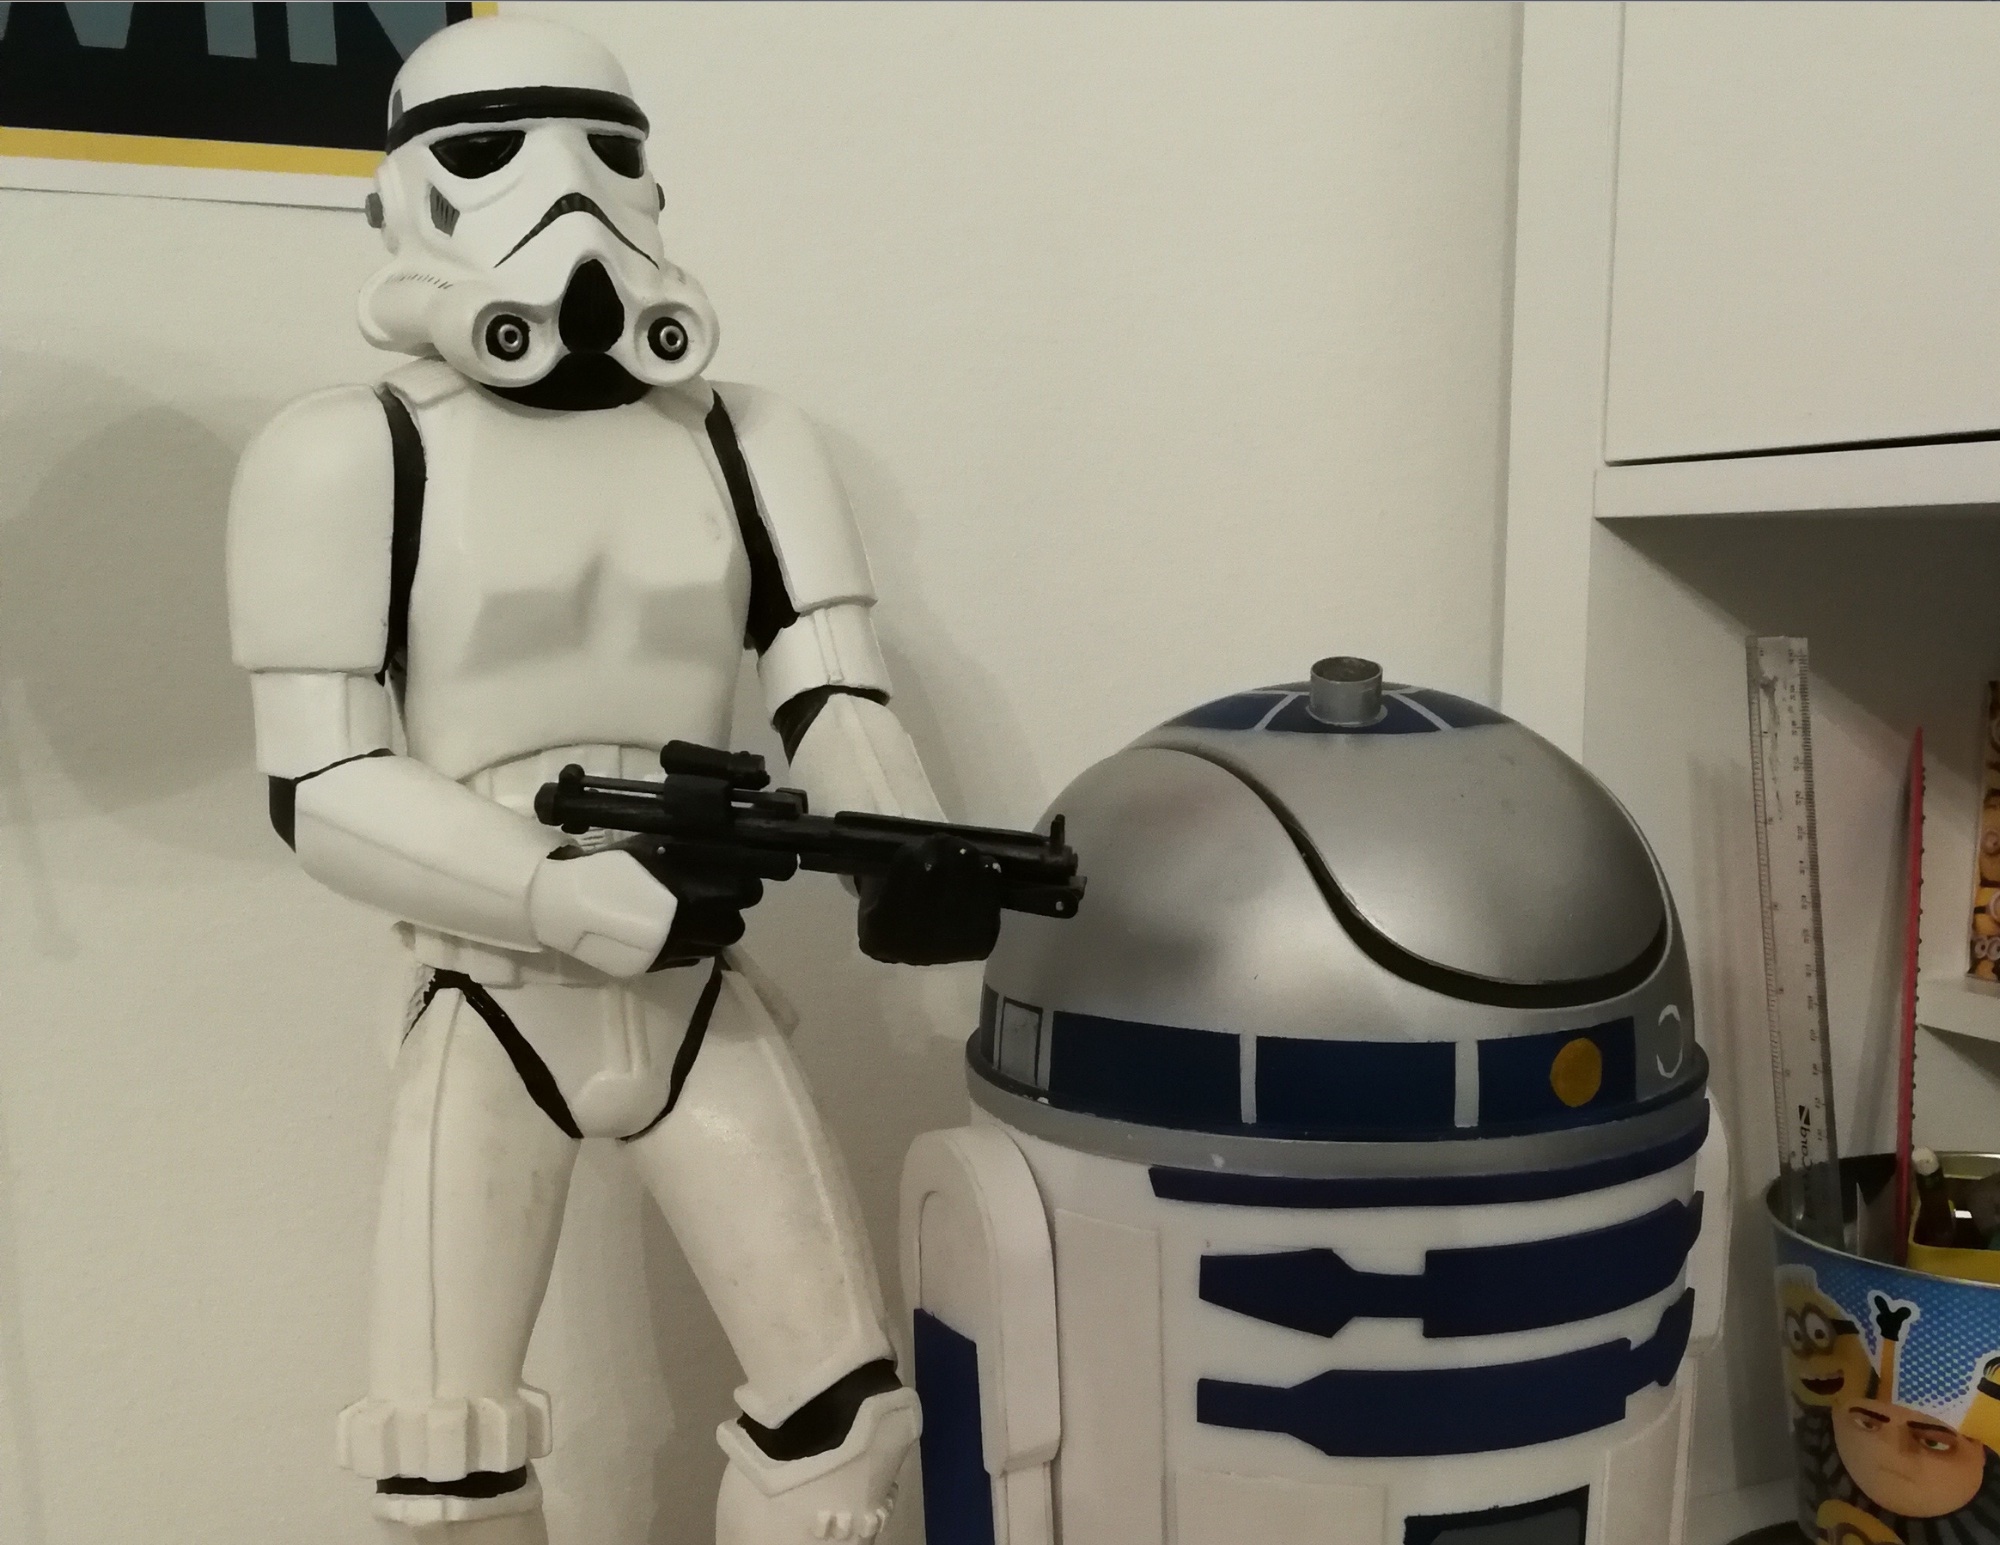 A Star Wars rajongói is kreatívan dobhatják fel otthonukat